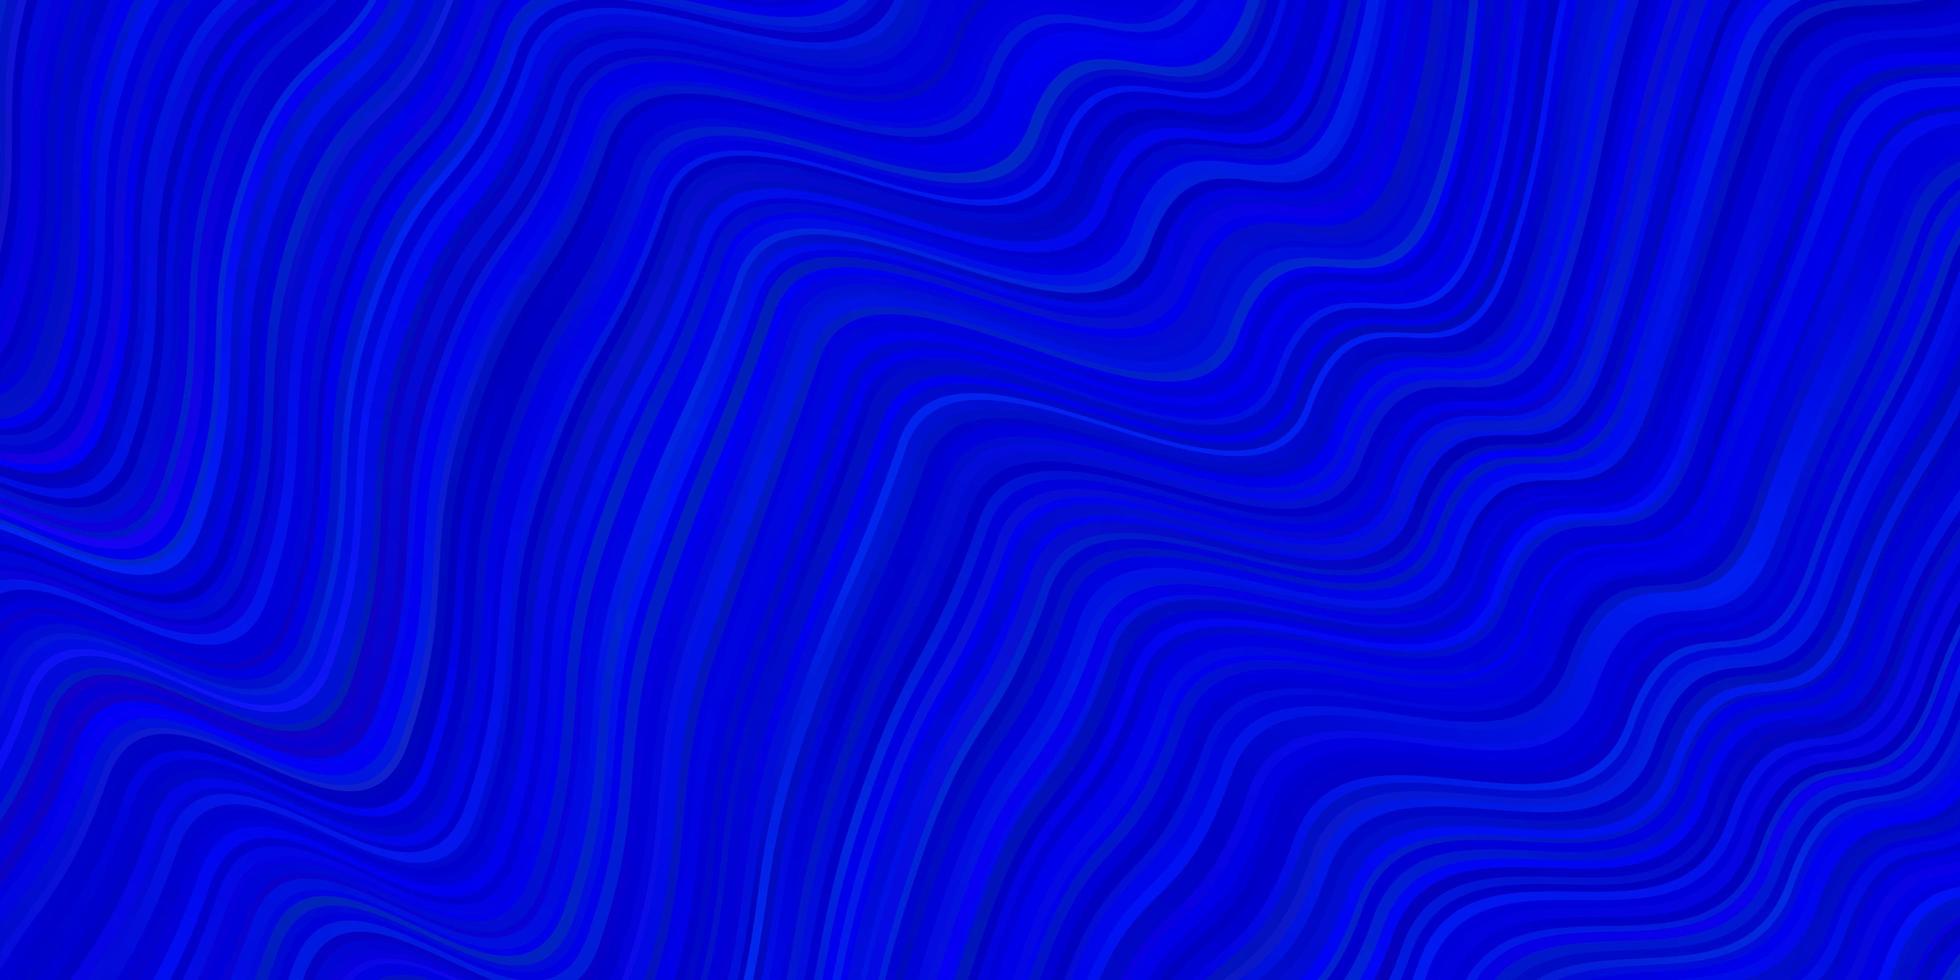 modèle vectoriel bleu rose clair avec des lignes